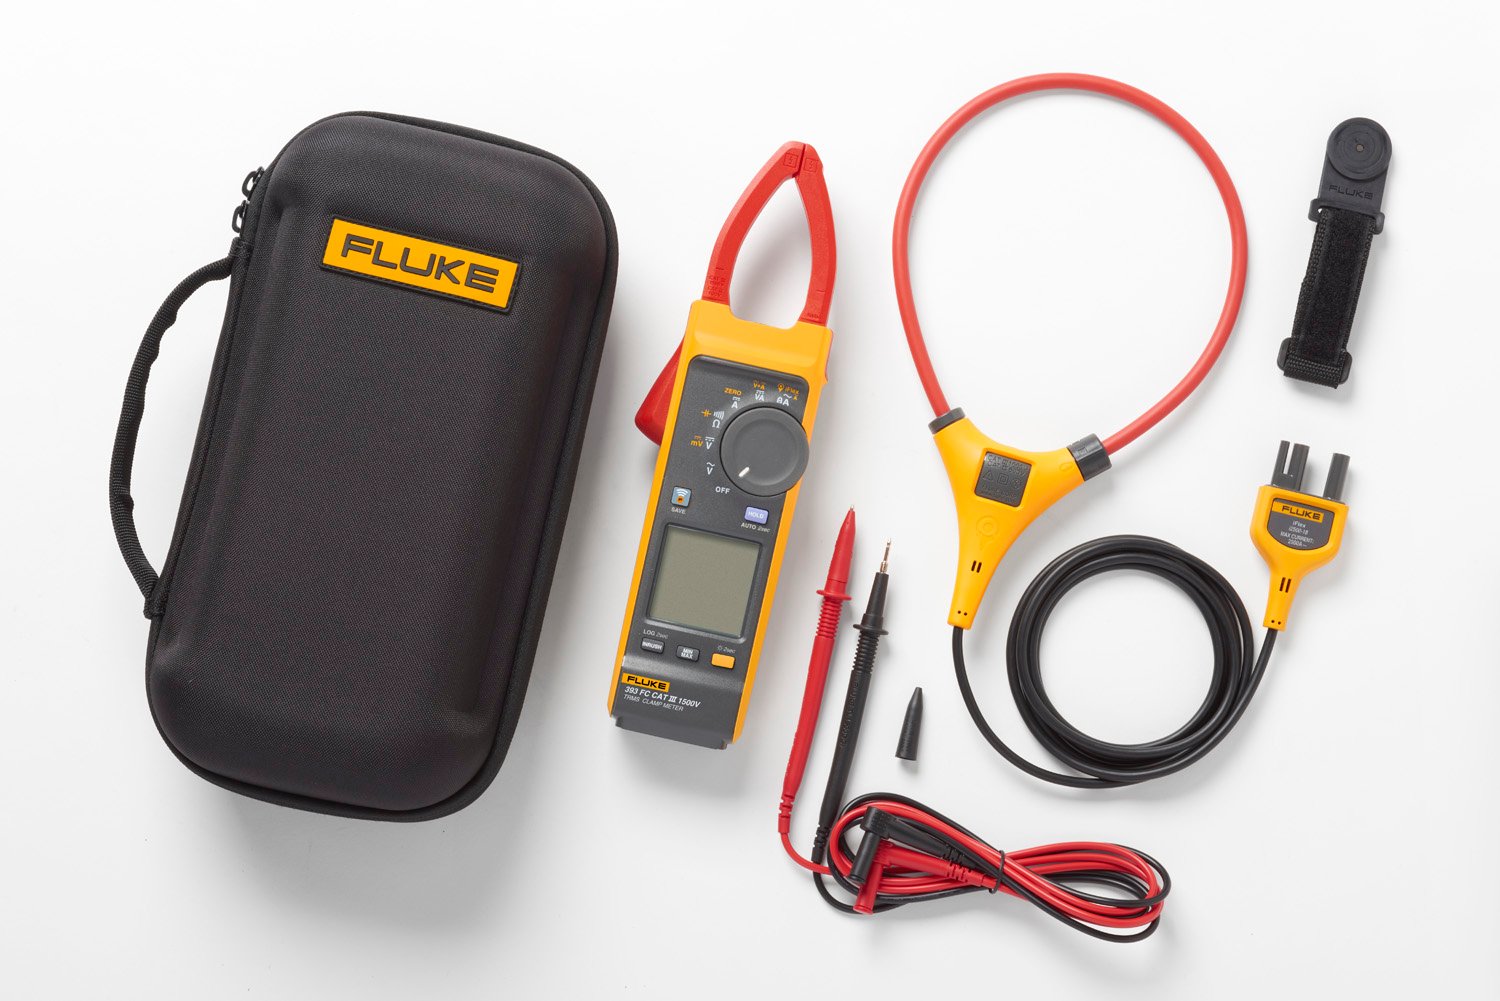 Fluke 393 FC med testledninger, fleksibel iFlex strømprobe, magnetholder og bæretaske